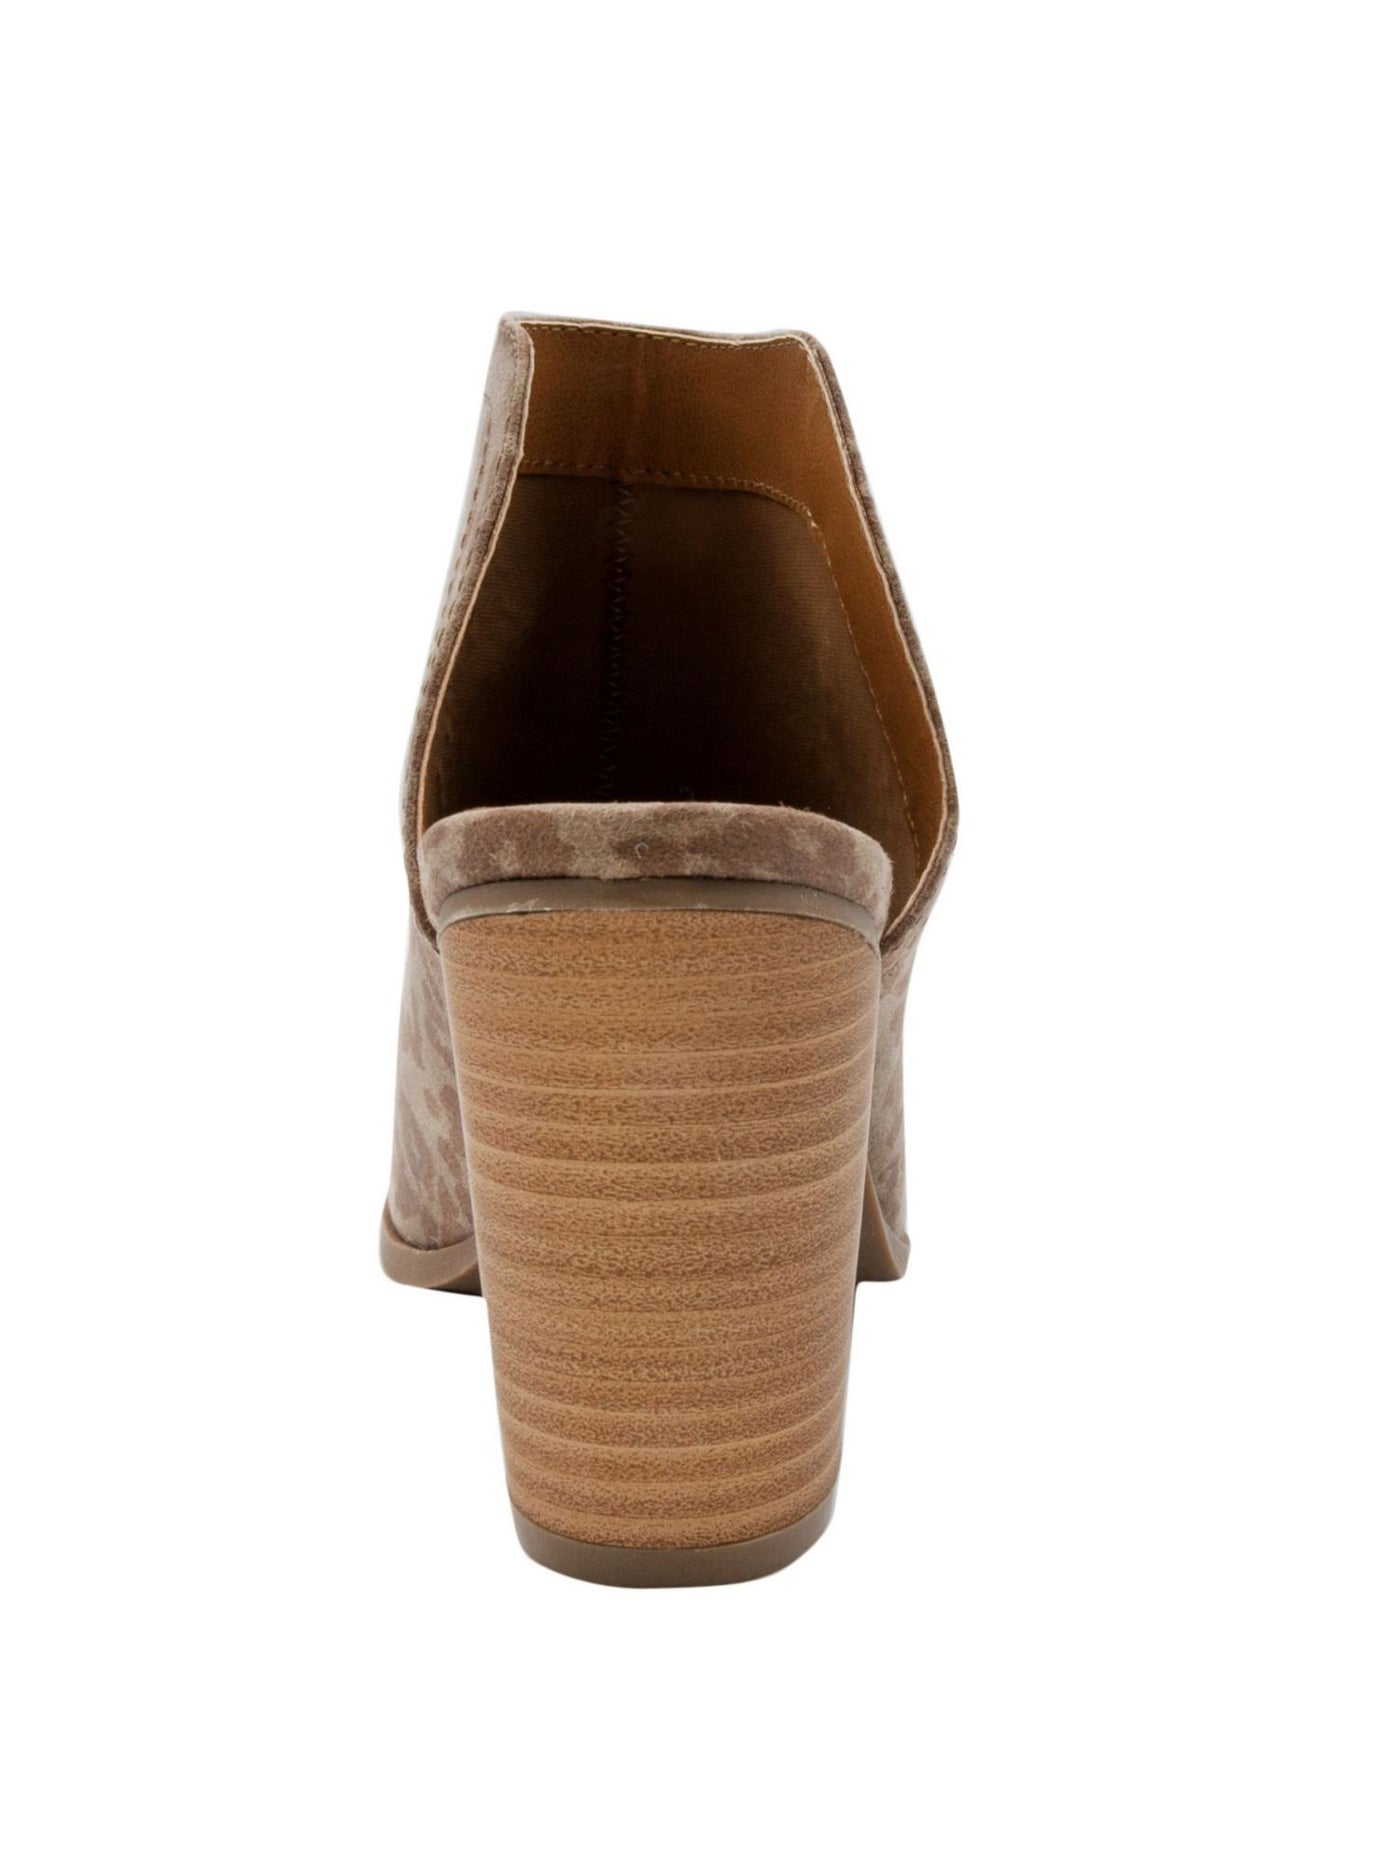 SUGAR Womens Brown Animal Print Peppermint Peep Toe Block Heel Slip On Dress Heeled Mules Shoes 9.5